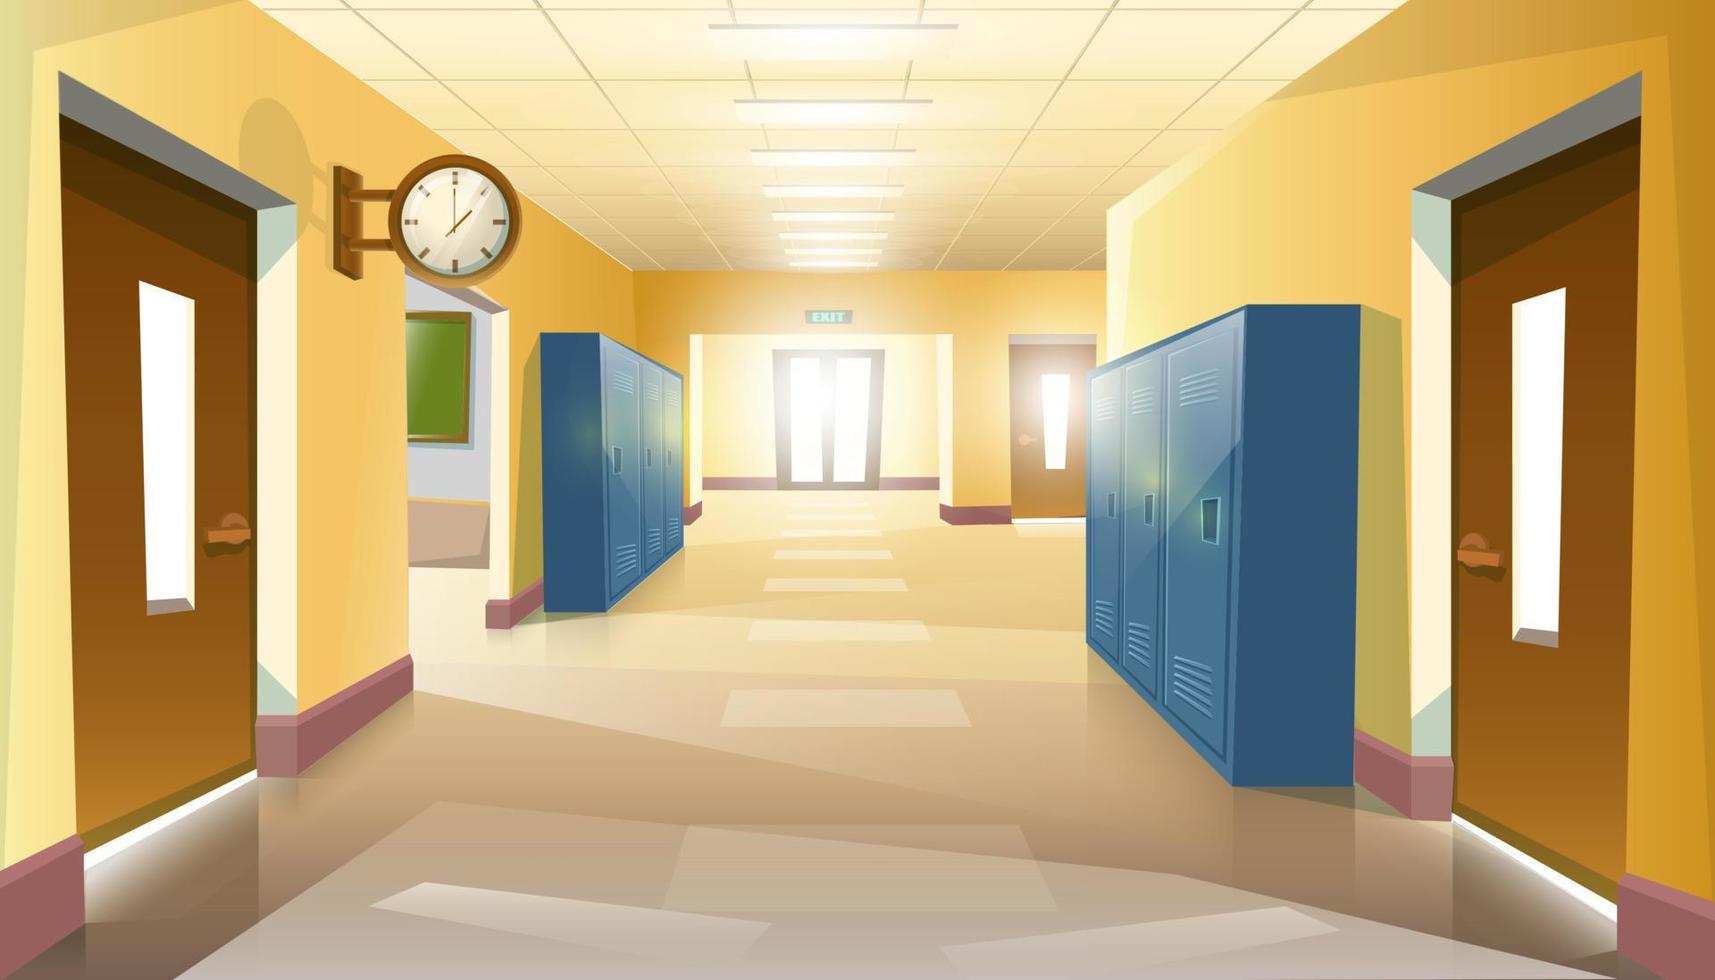 Pasillo escolar estilo caricatura vectorial con puertas abiertas de clases con mesas y sillas de estudio. vector